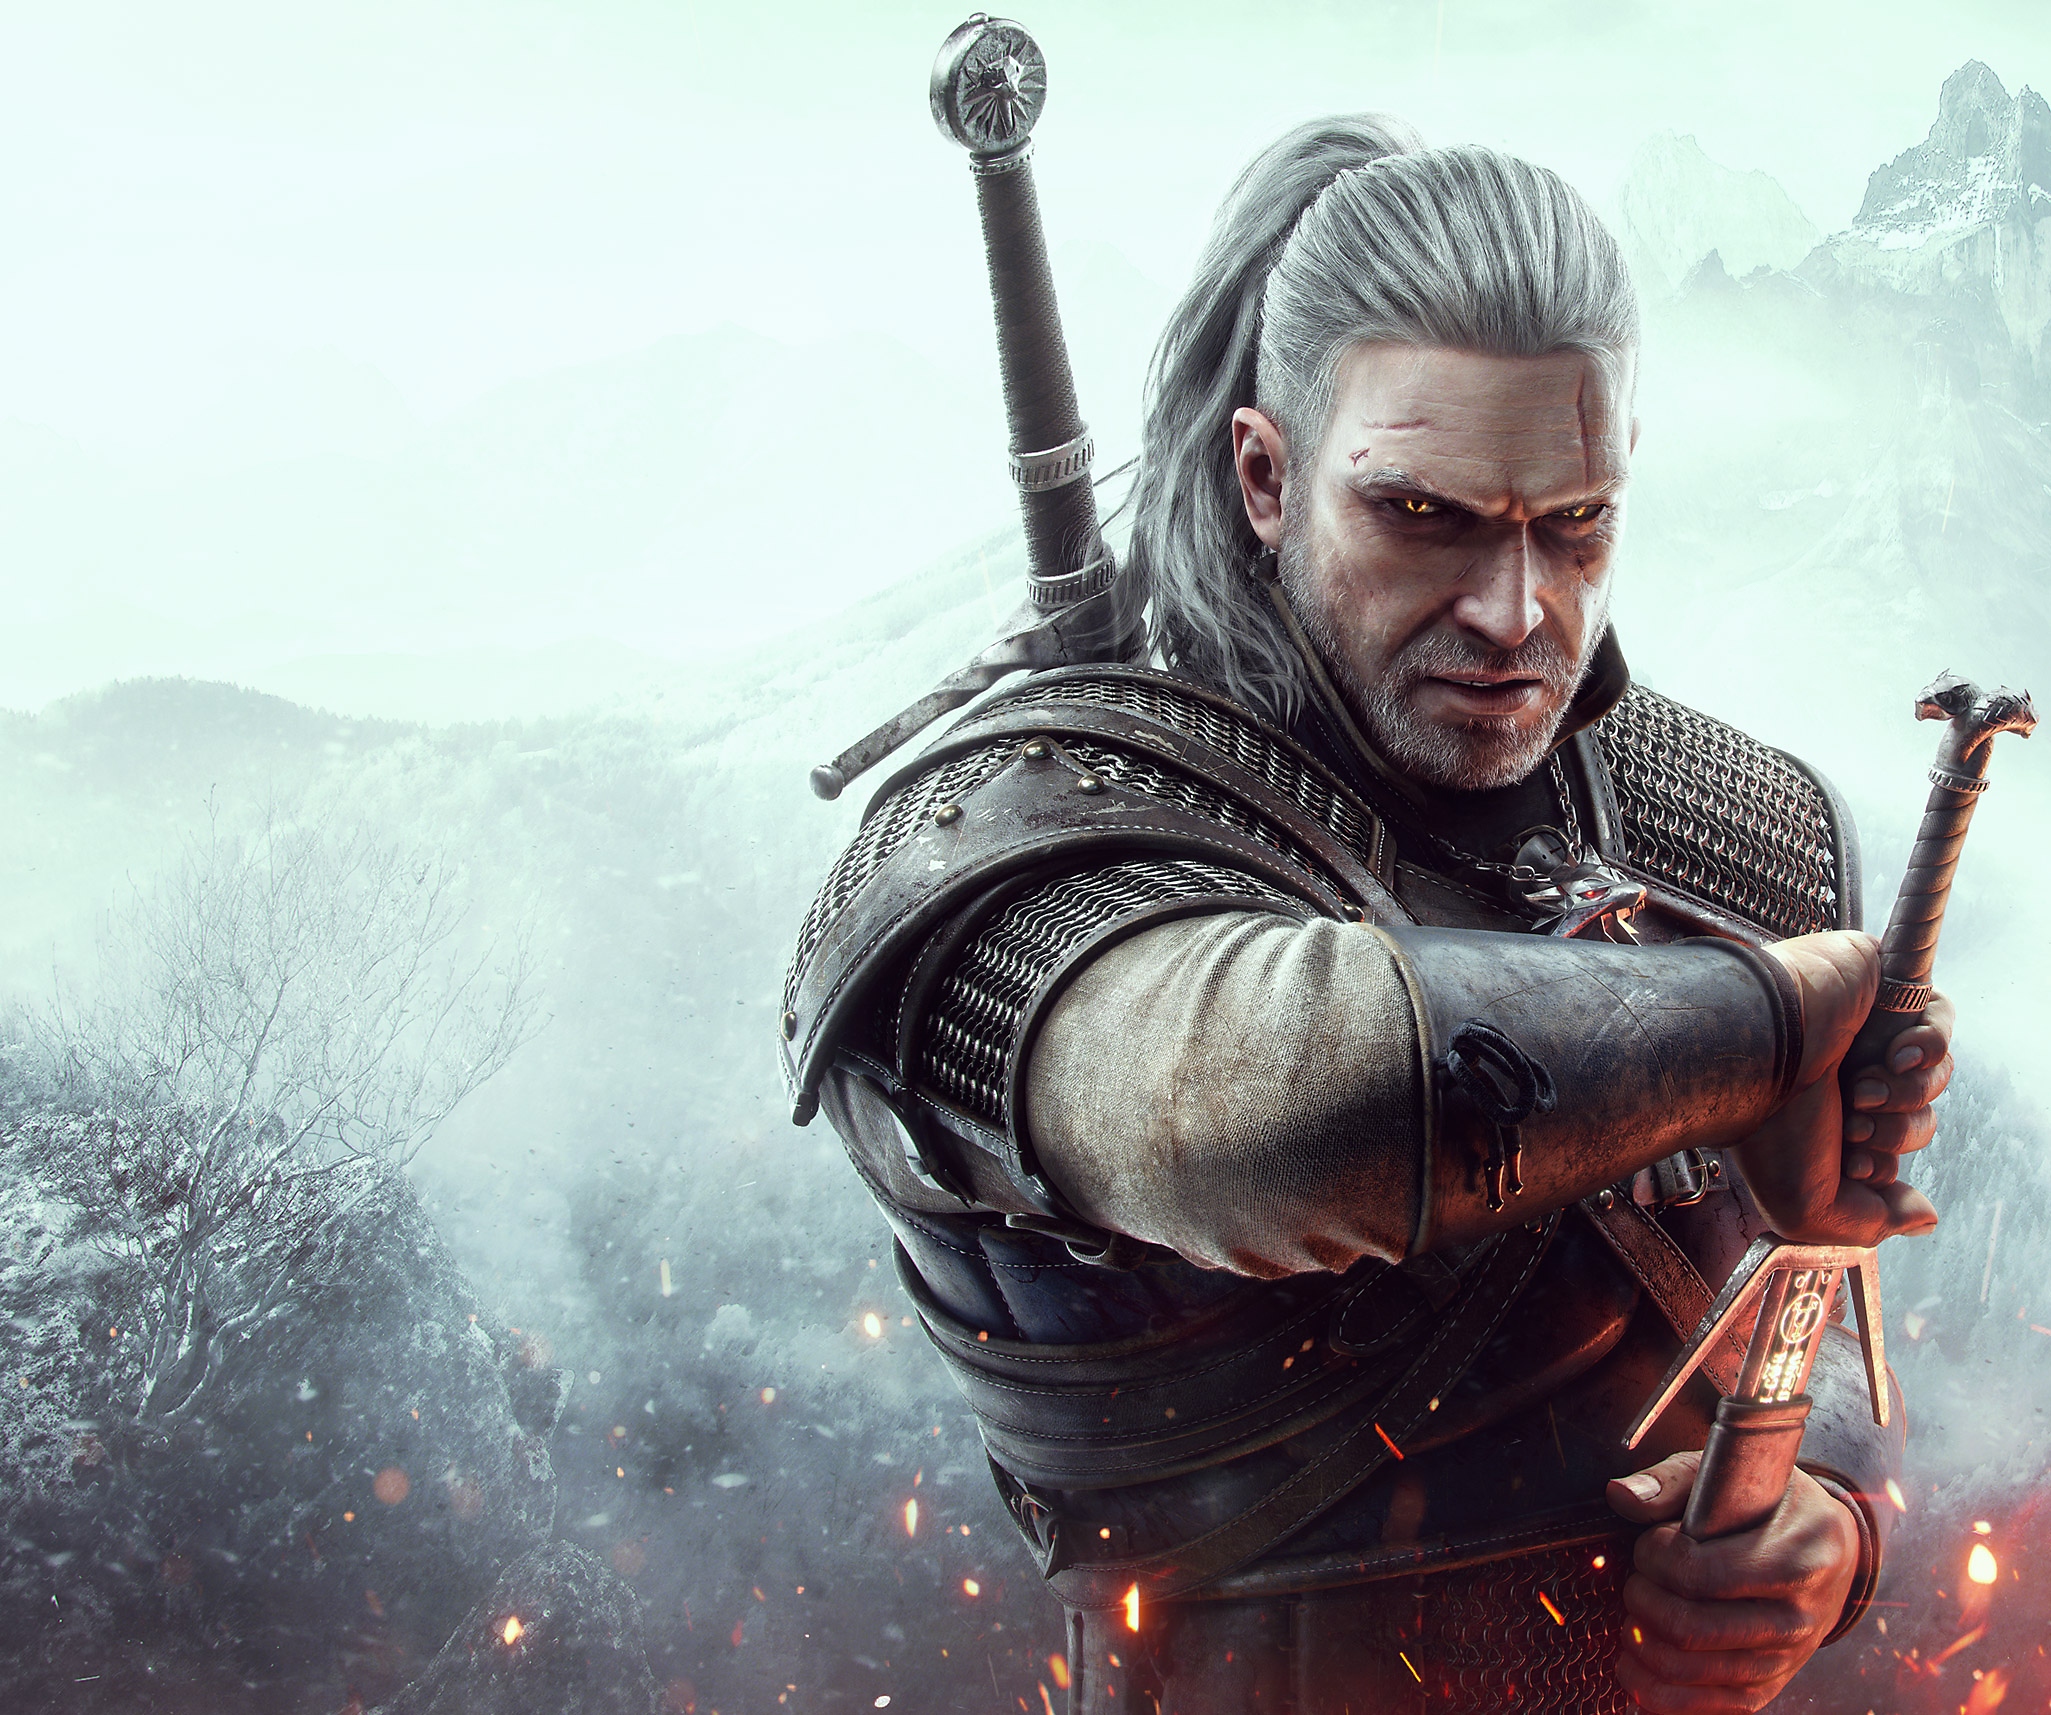 صورة فنية أساسية من The Witcher 3 تظهر فيها الشخصية الرئيسية Geralt of Rivia يخرج سيفه.